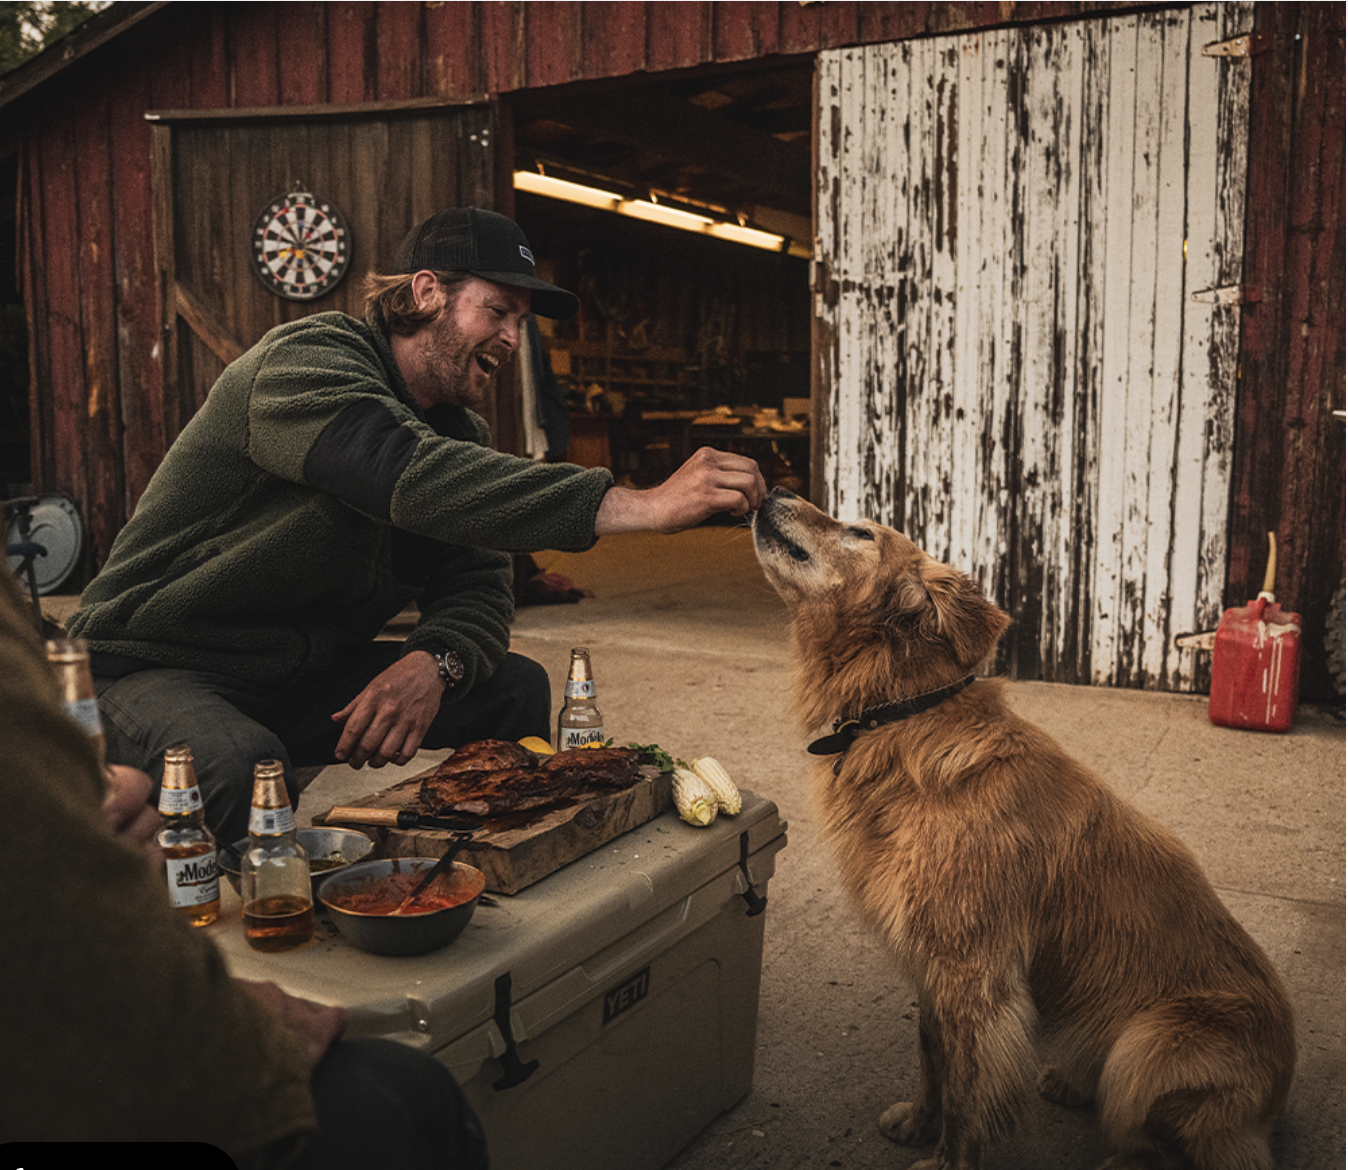  sitka gear man feeding dog steak rustic barn 